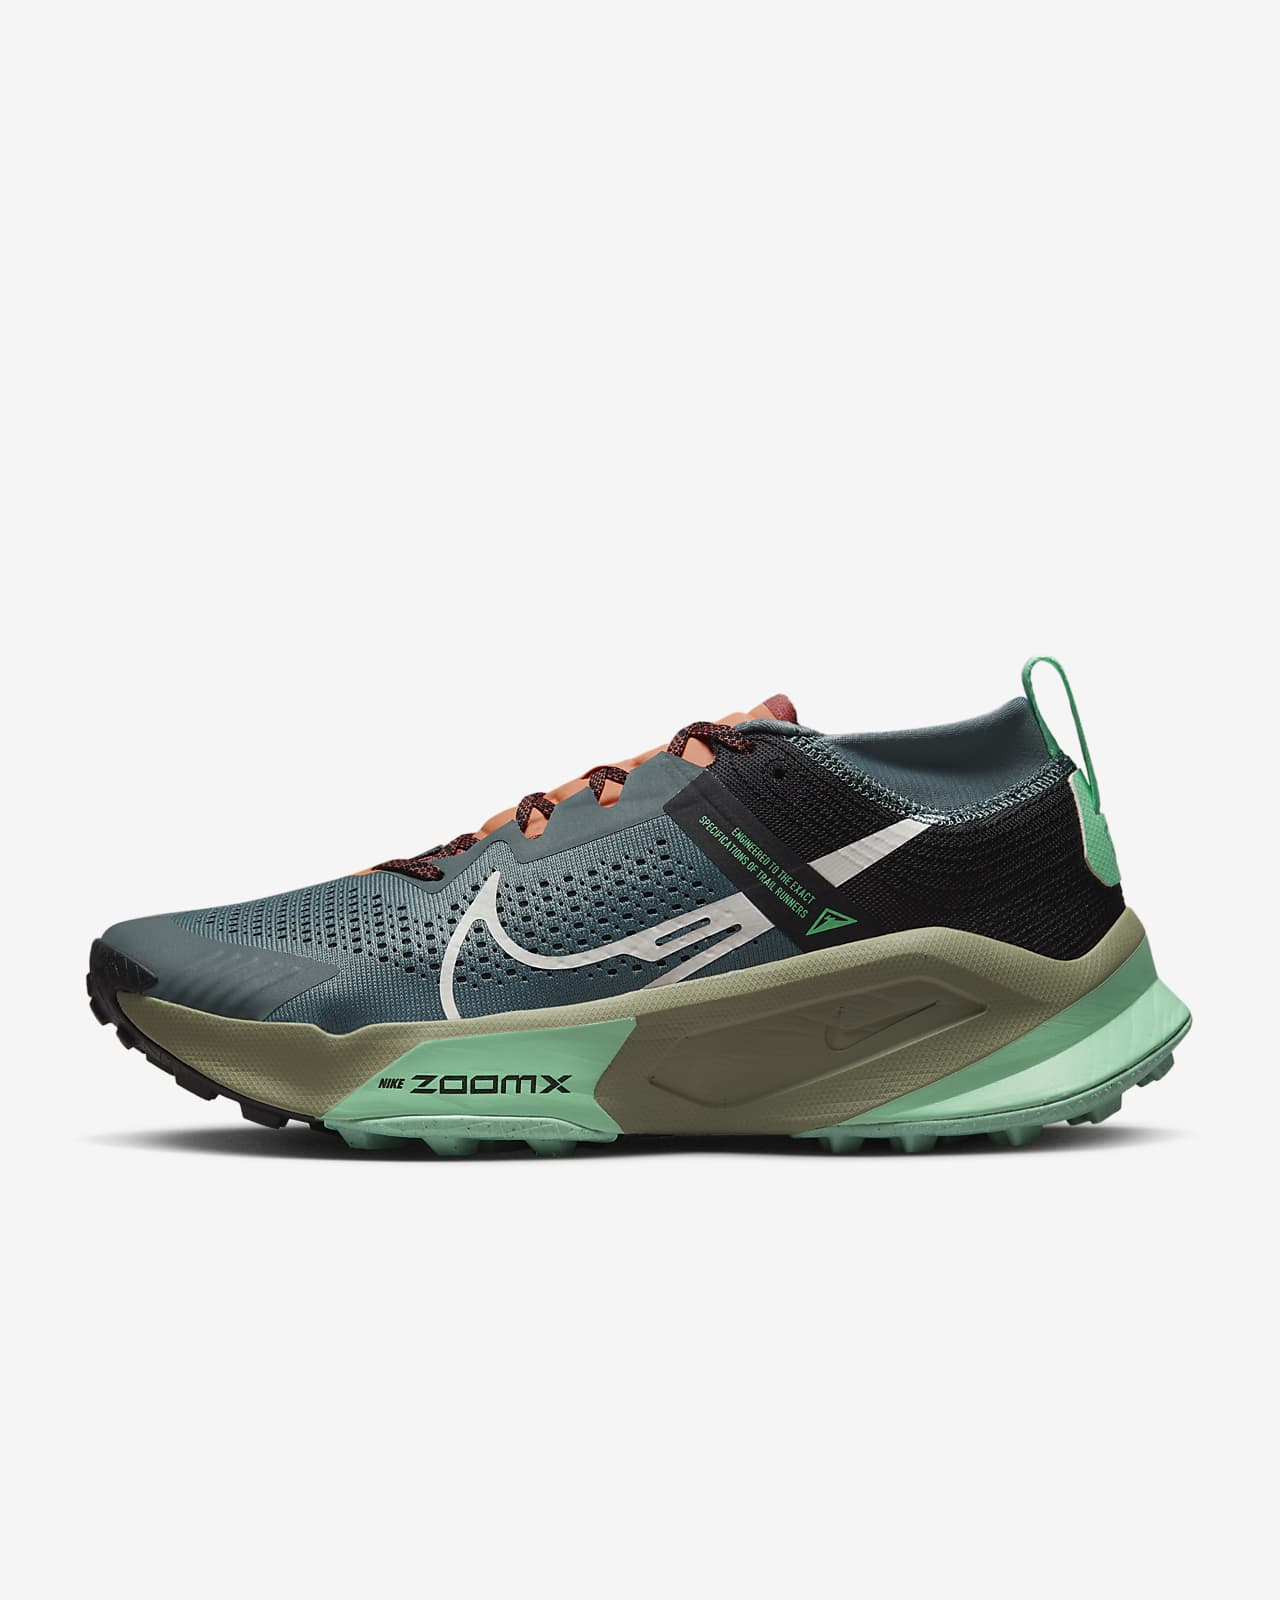 Ανδρικά παπούτσια για τρέξιμο σε ανώμαλο δρόμο Nike ZoomX Zegama